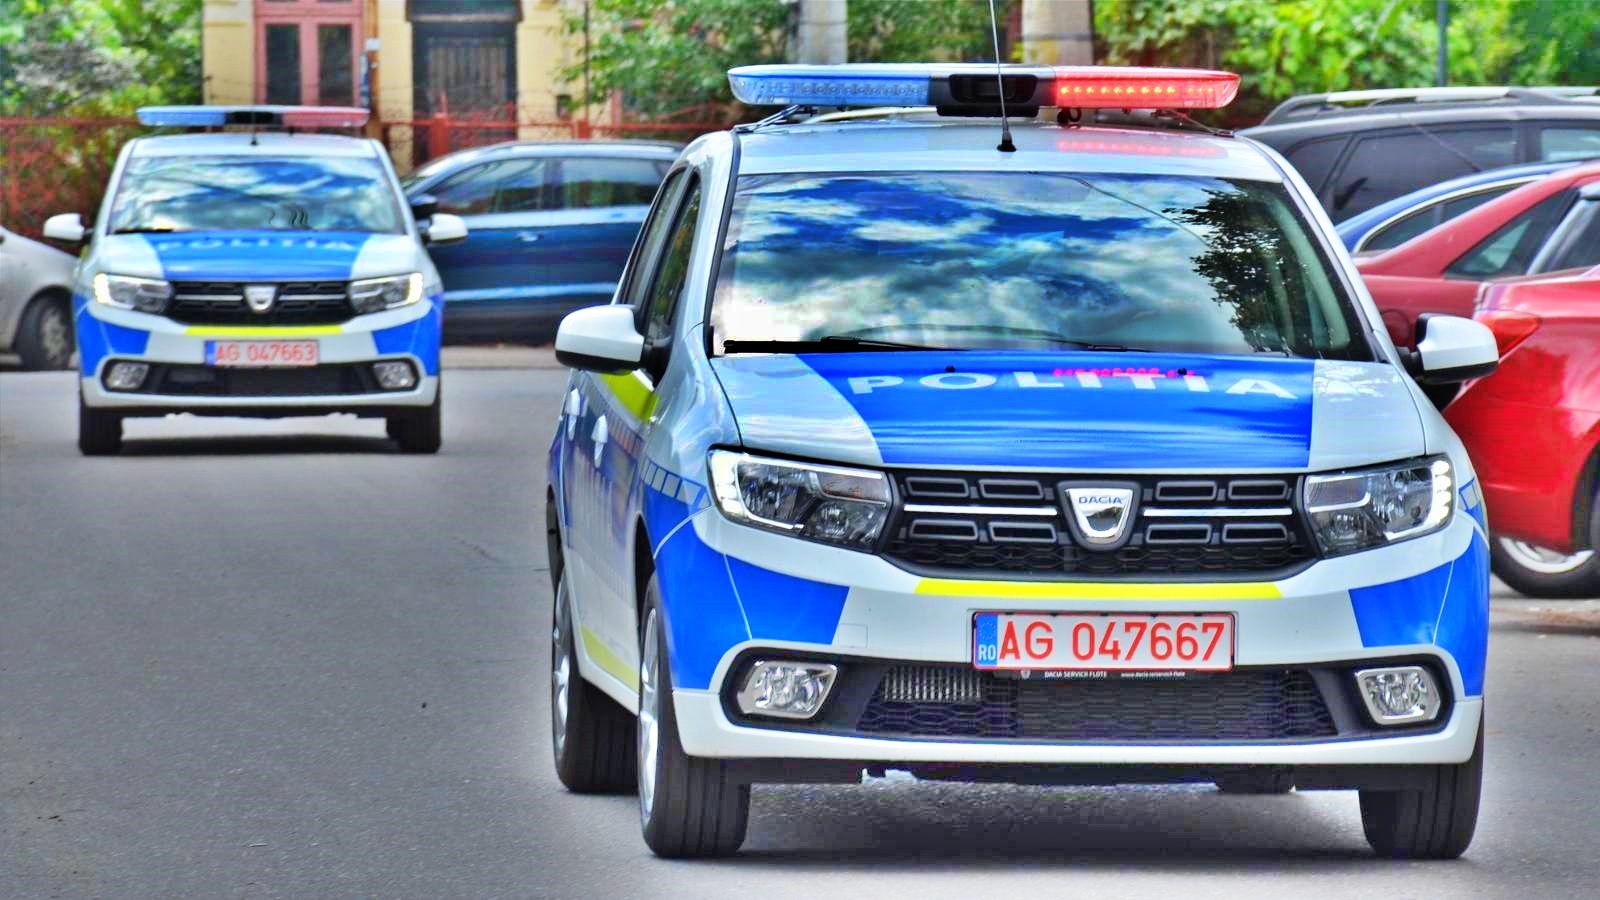 Politia Romana Masurile Luate pentru Prevenirea Raspandirii COVID-19